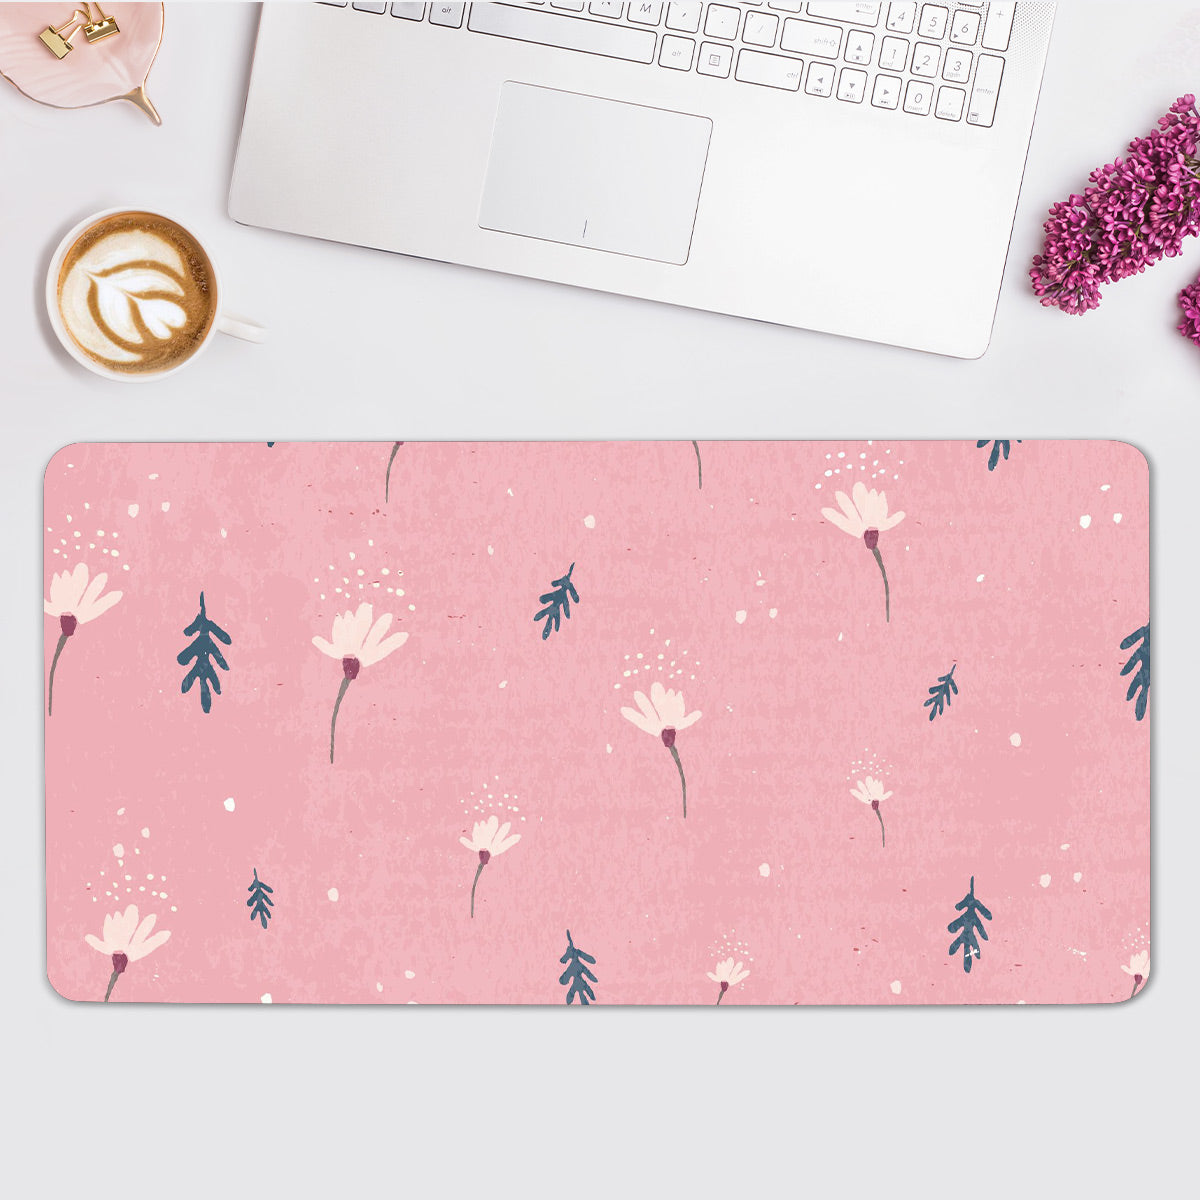 Pink Floral Desk Pad